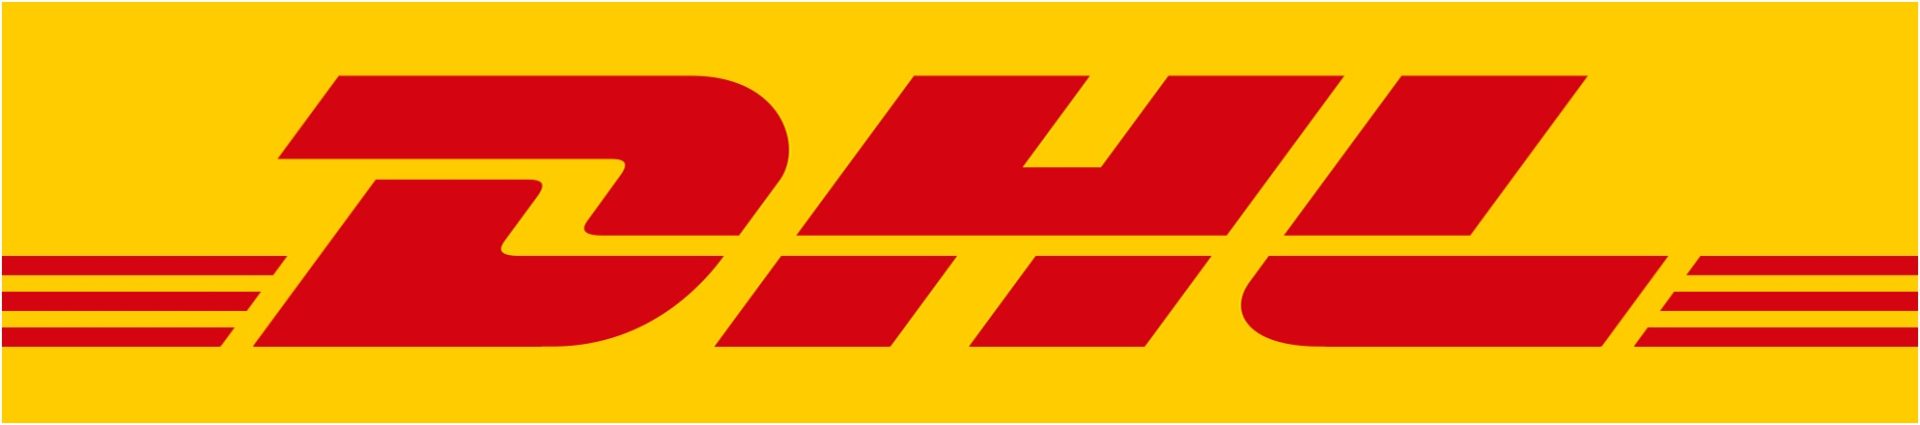 O logotipo da DHL em um fundo amarelo exala um esquema de cores vibrantes da Accenture.